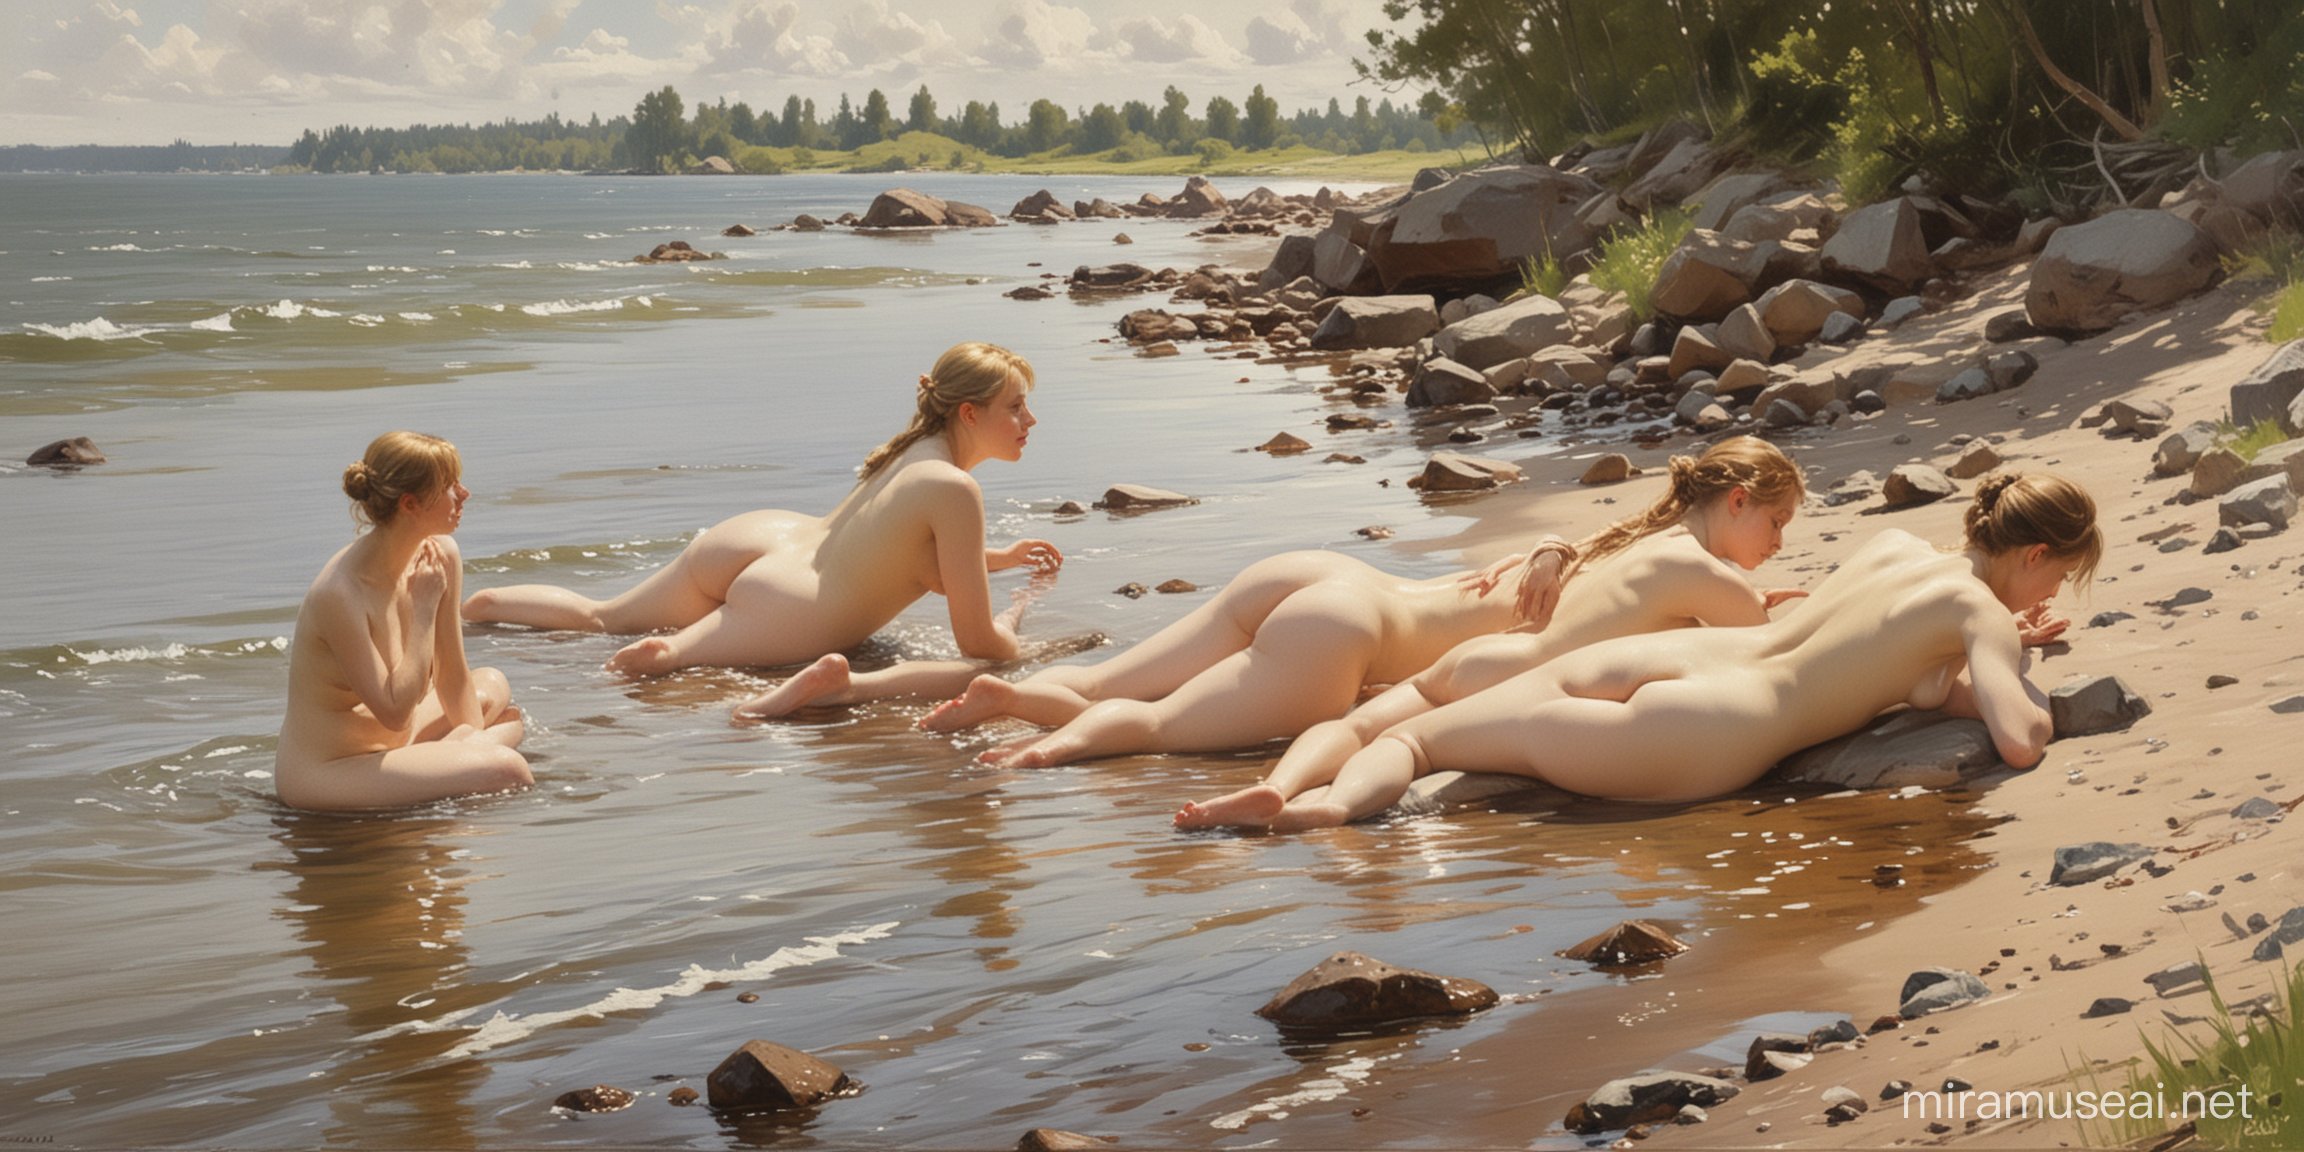  картина ,в стиле художника Андерс Цорн купаются девушки обнаженные  , лежат на берегу, 